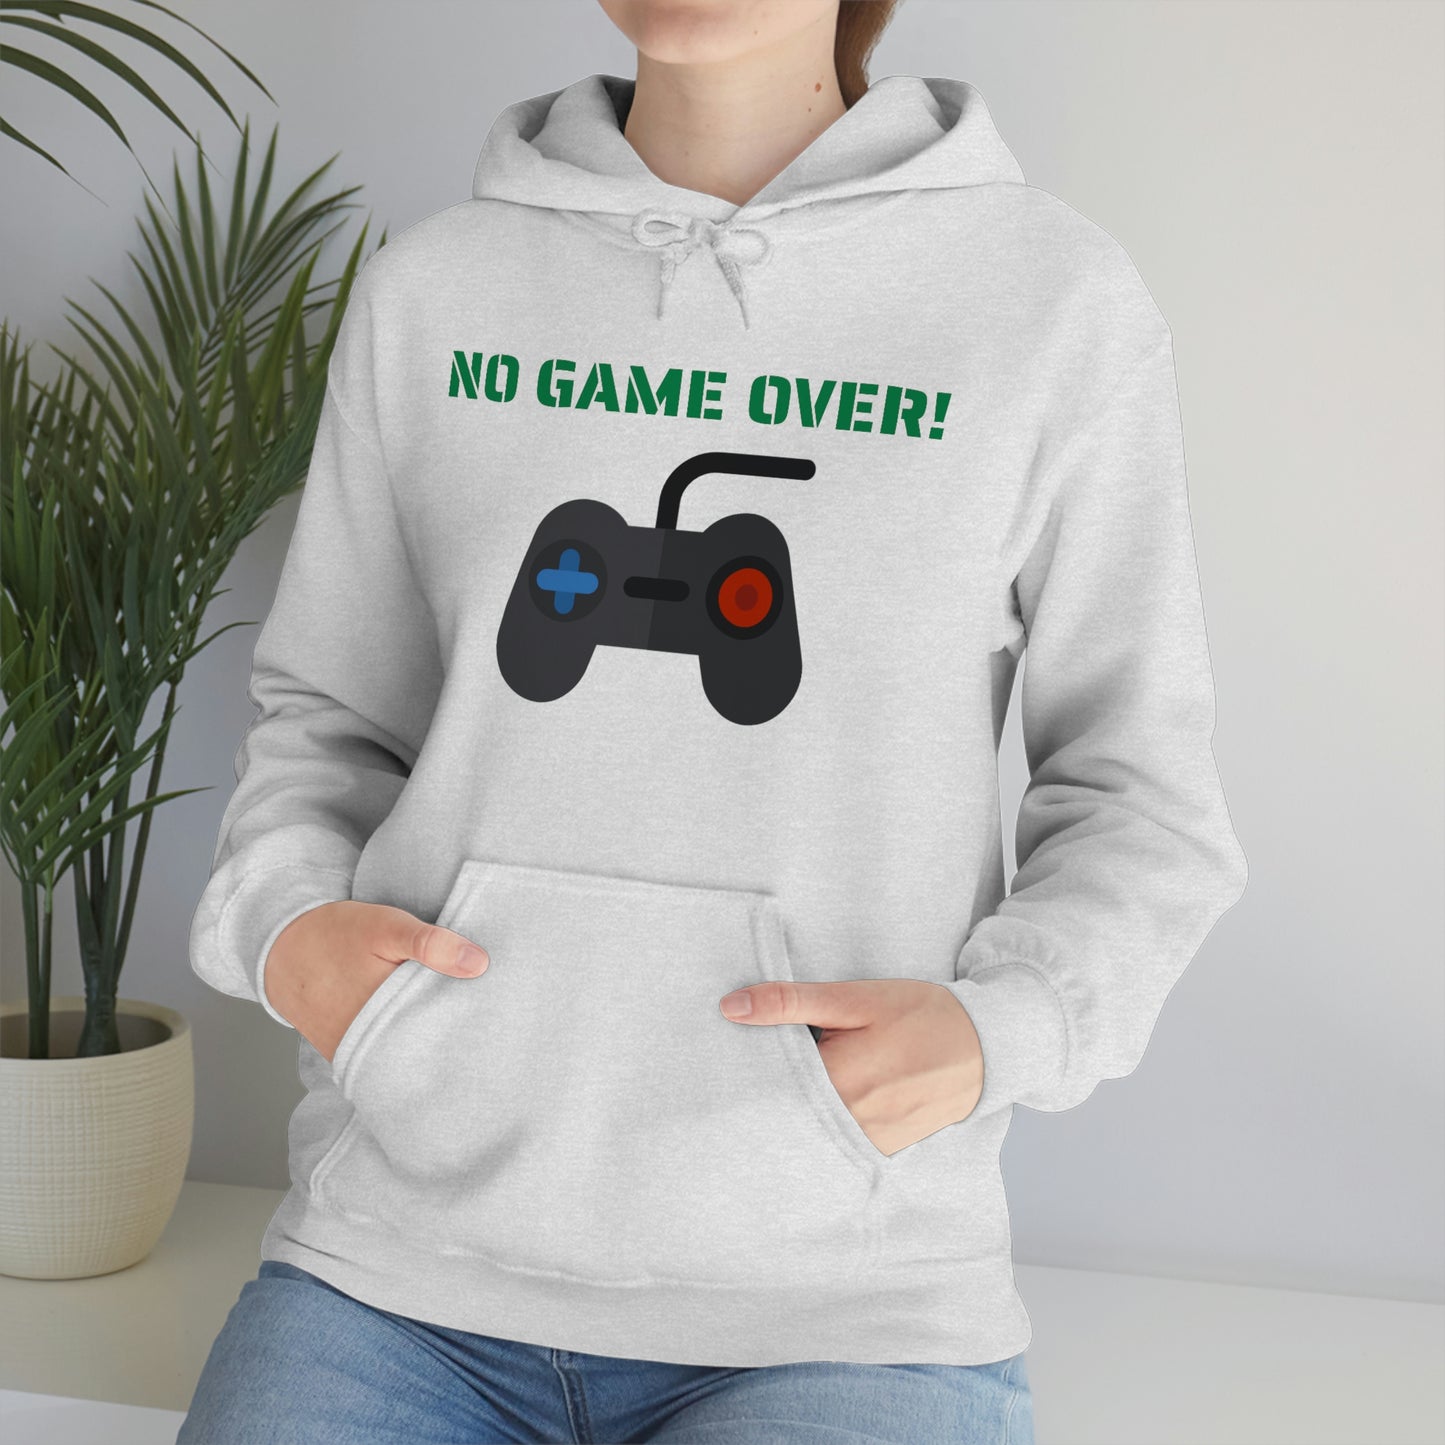 No Game Over! Unisex Hooded Sweatshirt